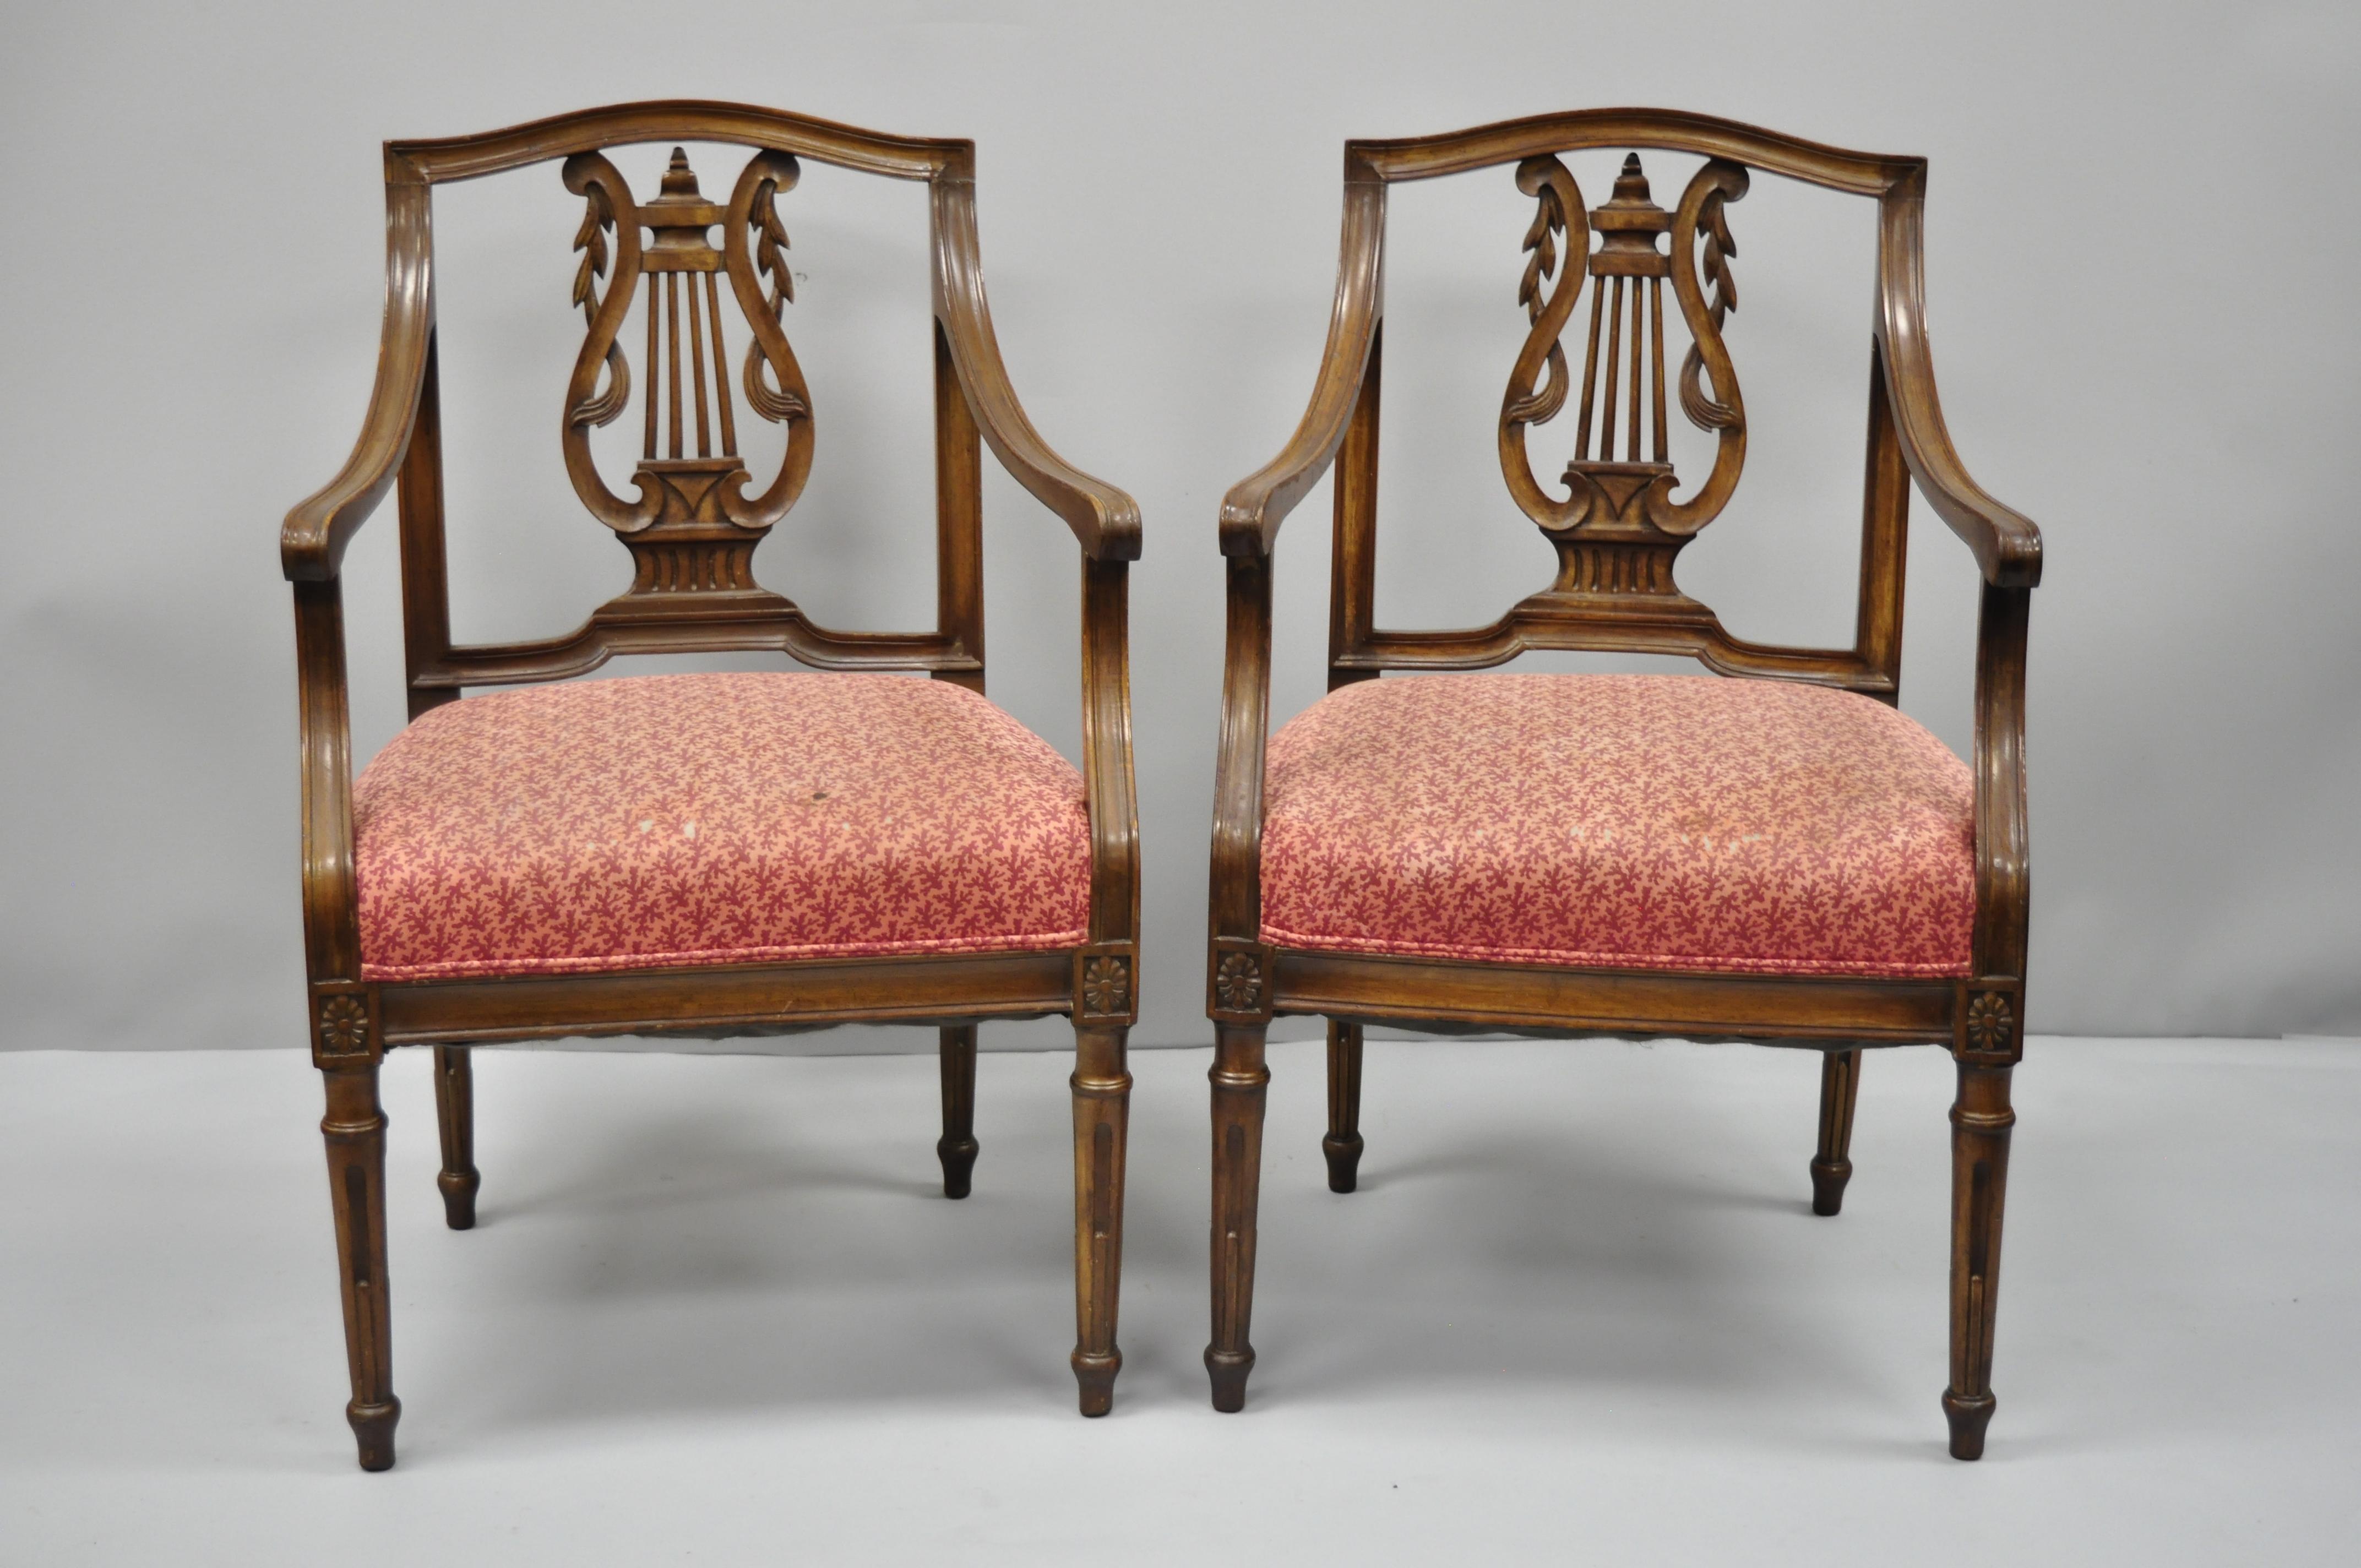 Zwei antike italienische Sessel im Louis-XVI-Stil mit Lyra-Rückenlehne. Geschnitzte Lyra-Rückenlehnen, kleinere attraktive Rahmen, Massivholzkonstruktion, verjüngte Beine, großartiger Stil und Form, um das frühe 20. Jahrhundert. Abmessungen: 34.5